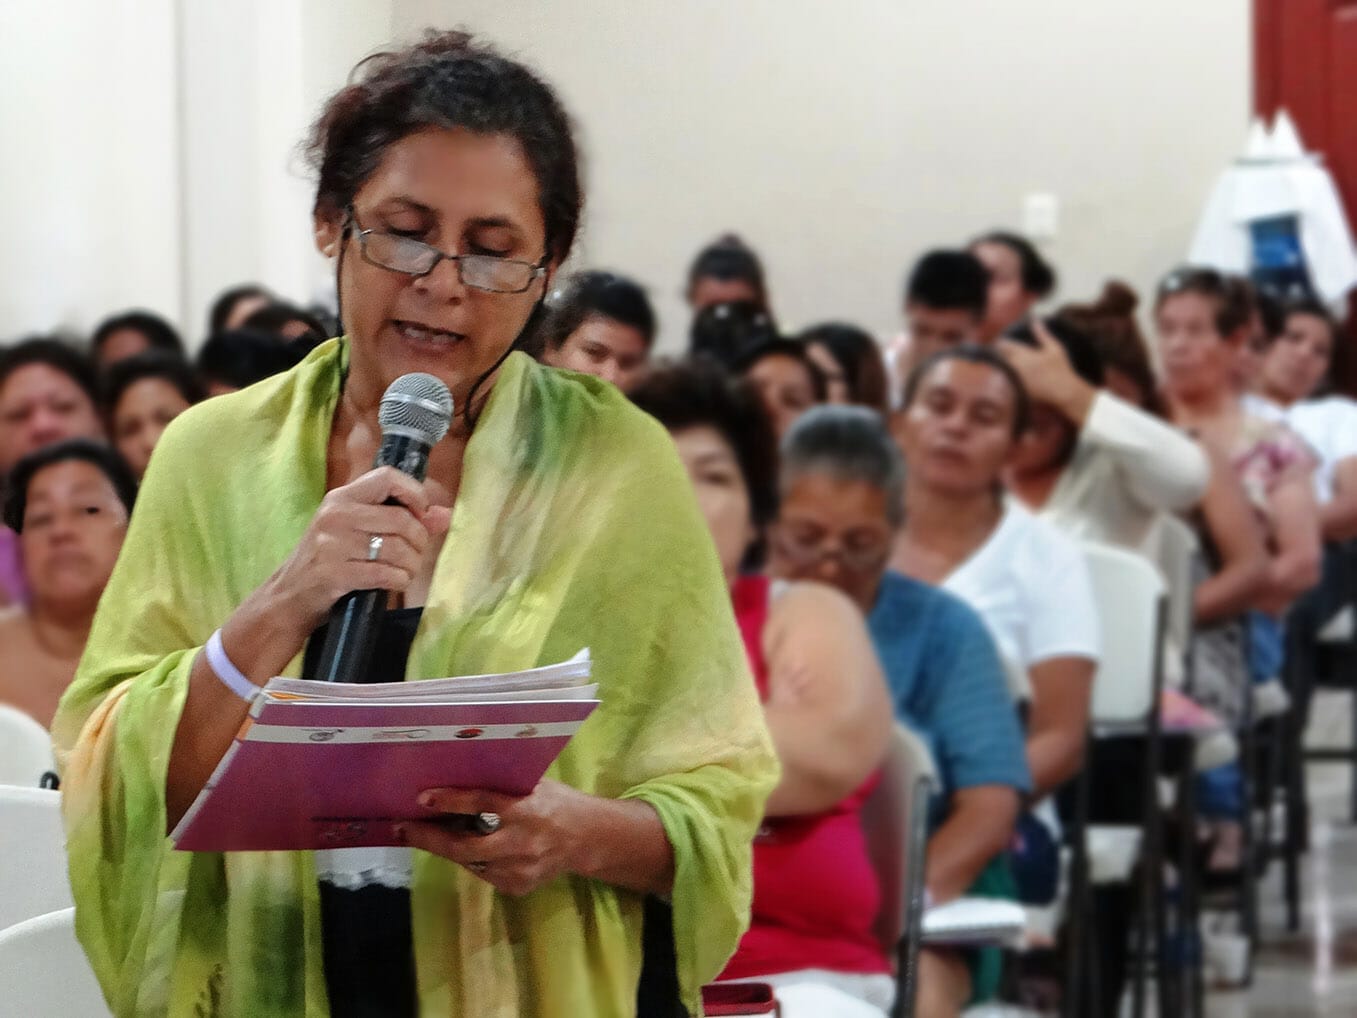 Arrivo de participantes al Encuentro Feminista 2014 - Preguntas asistentes